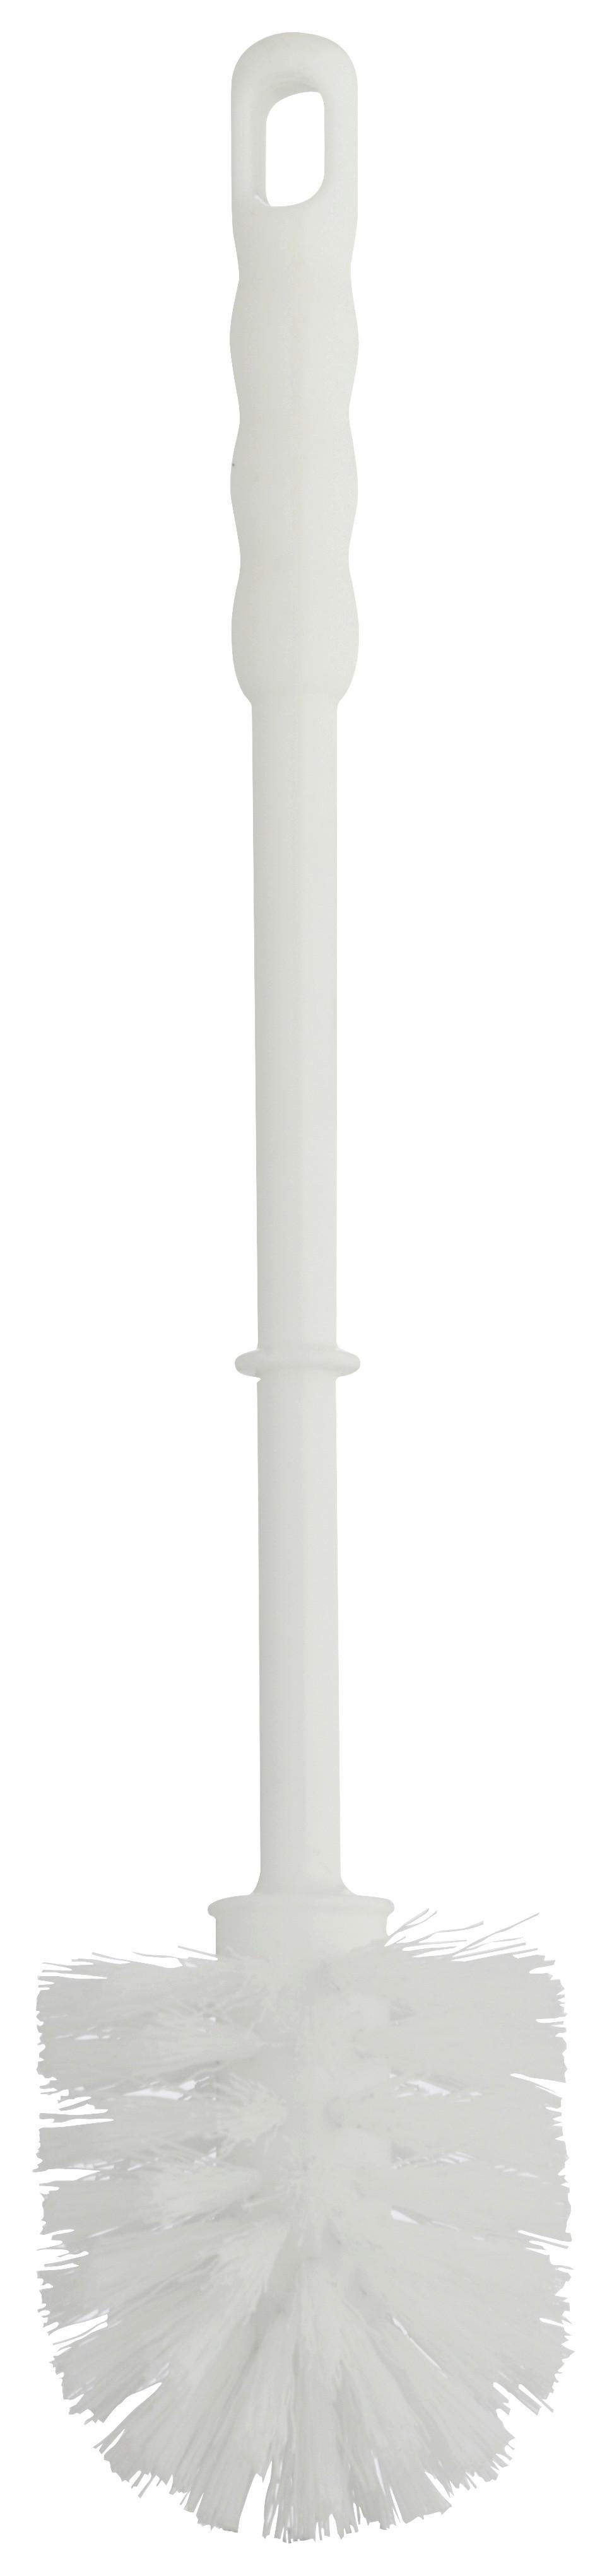 Wc Štětka Wc-Bürste 271570 - bílá, Moderní, plast (7,5/37cm)